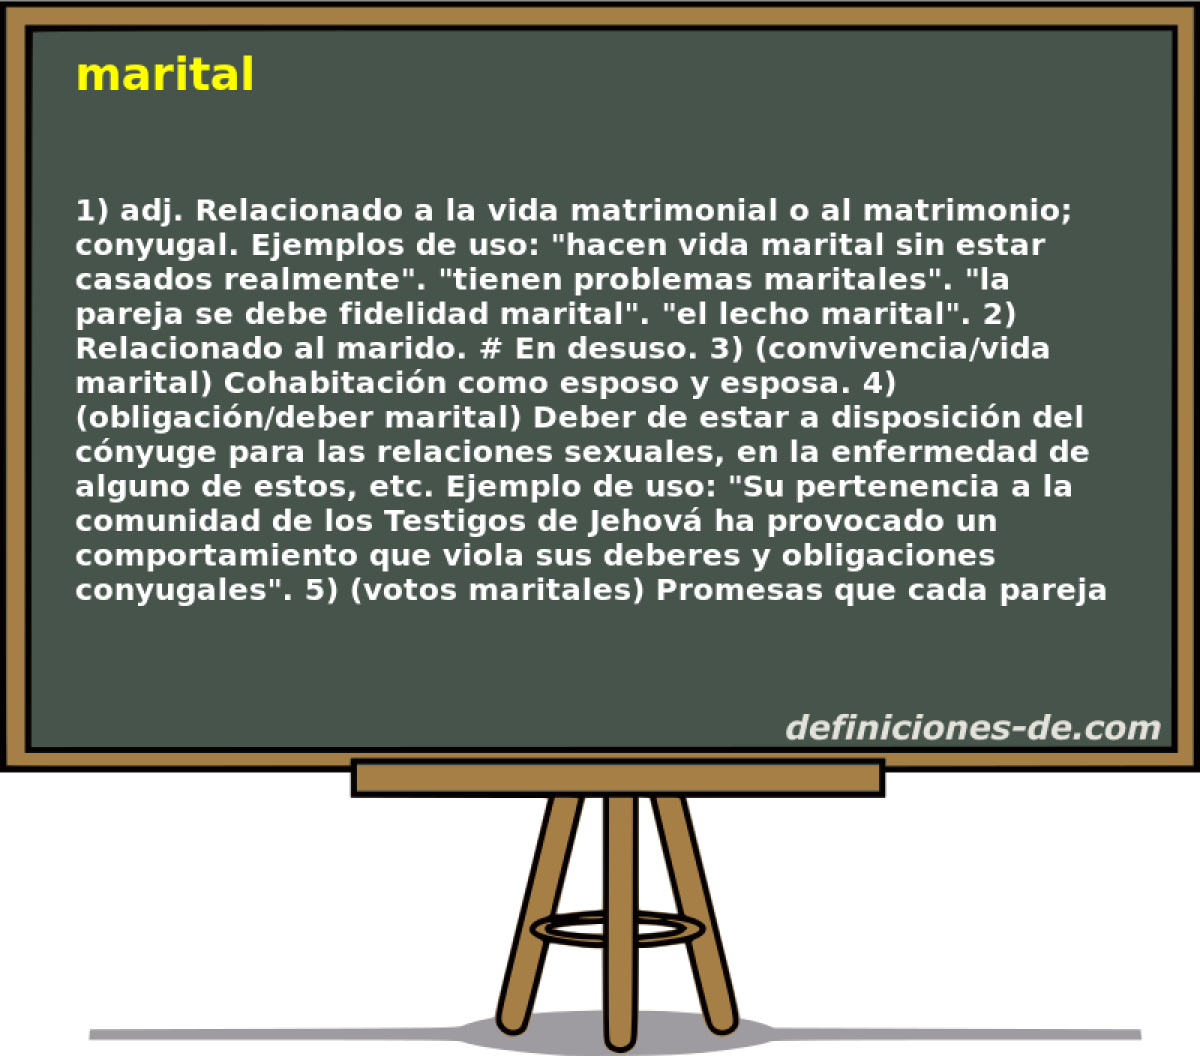 marital 